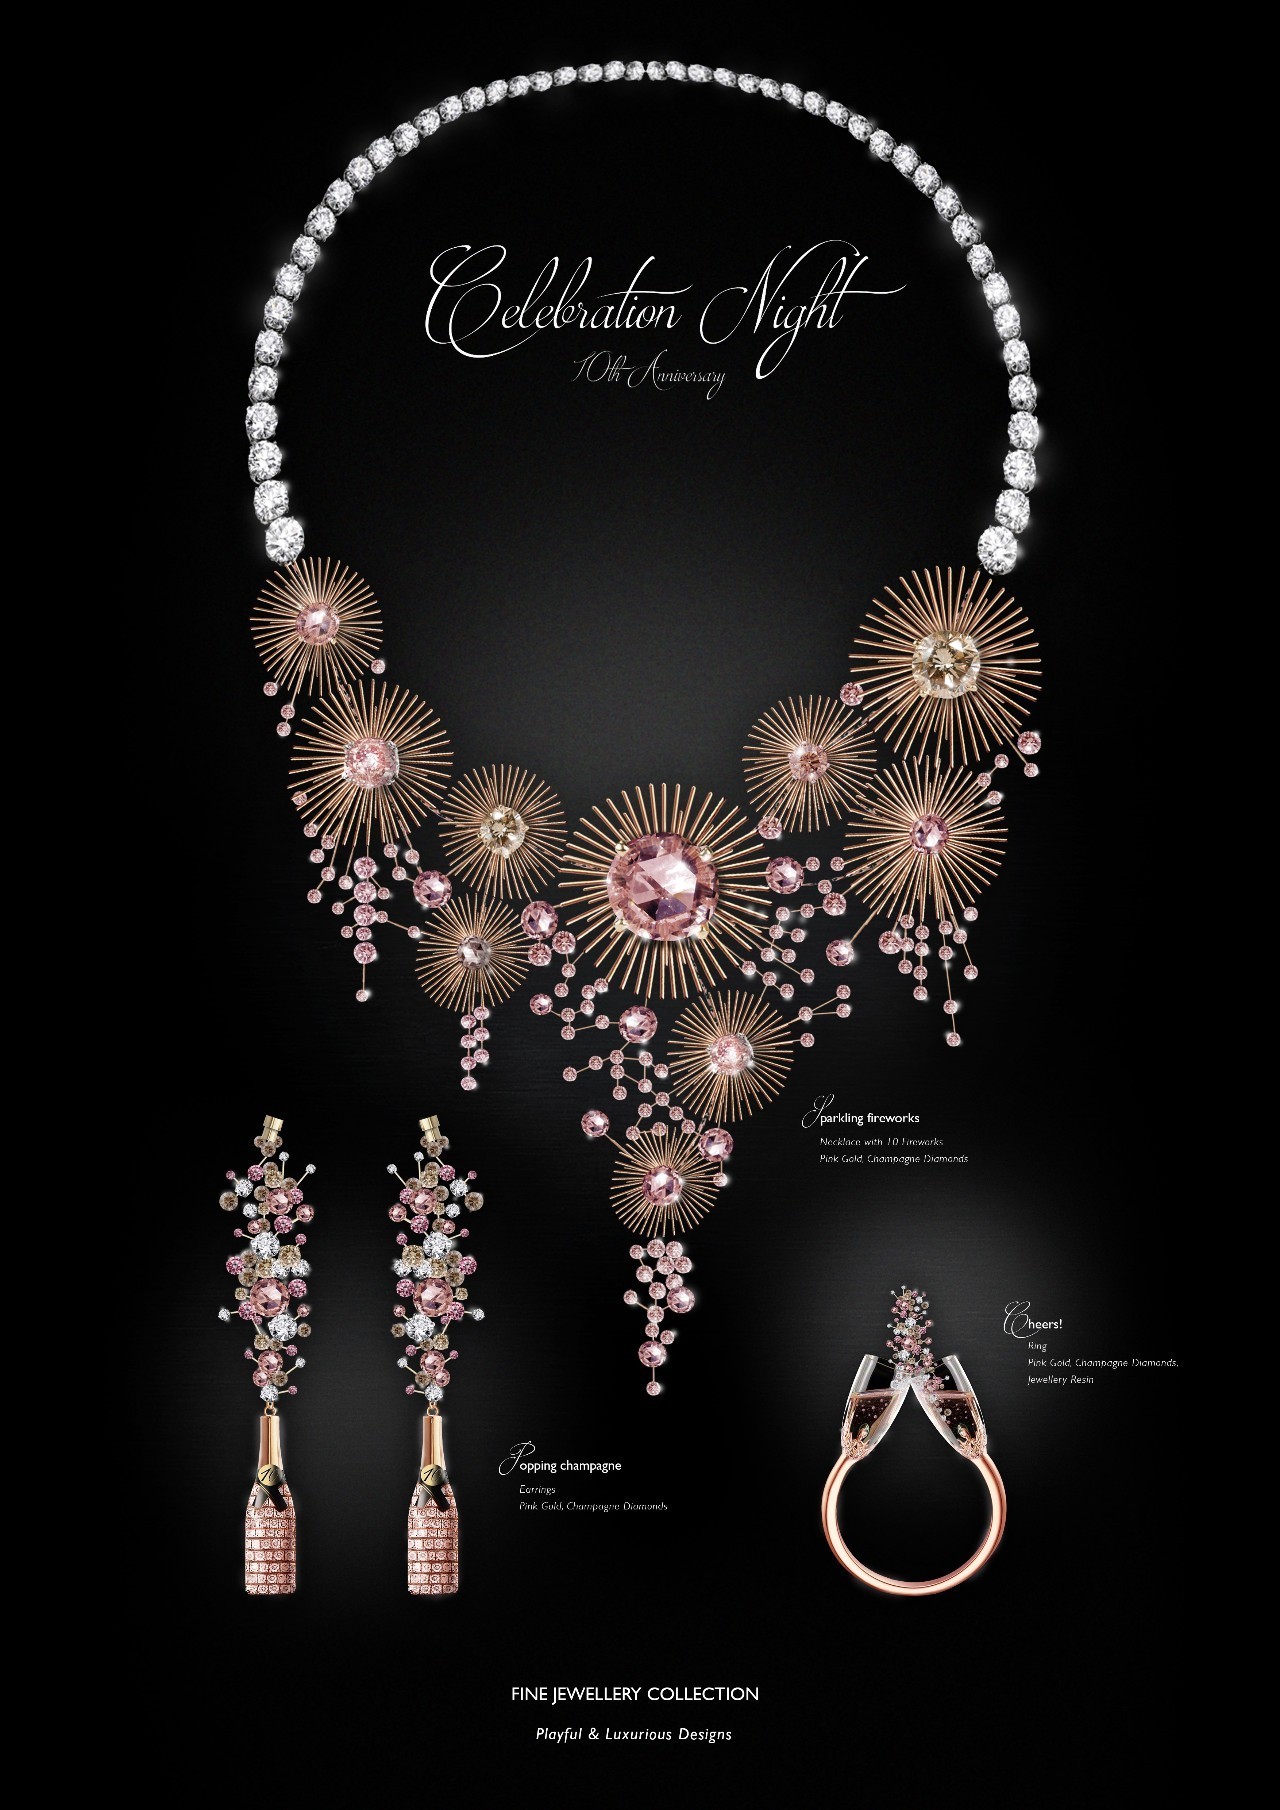 设计发生|2016 GIT世界珠宝设计大赛获奖作品公布